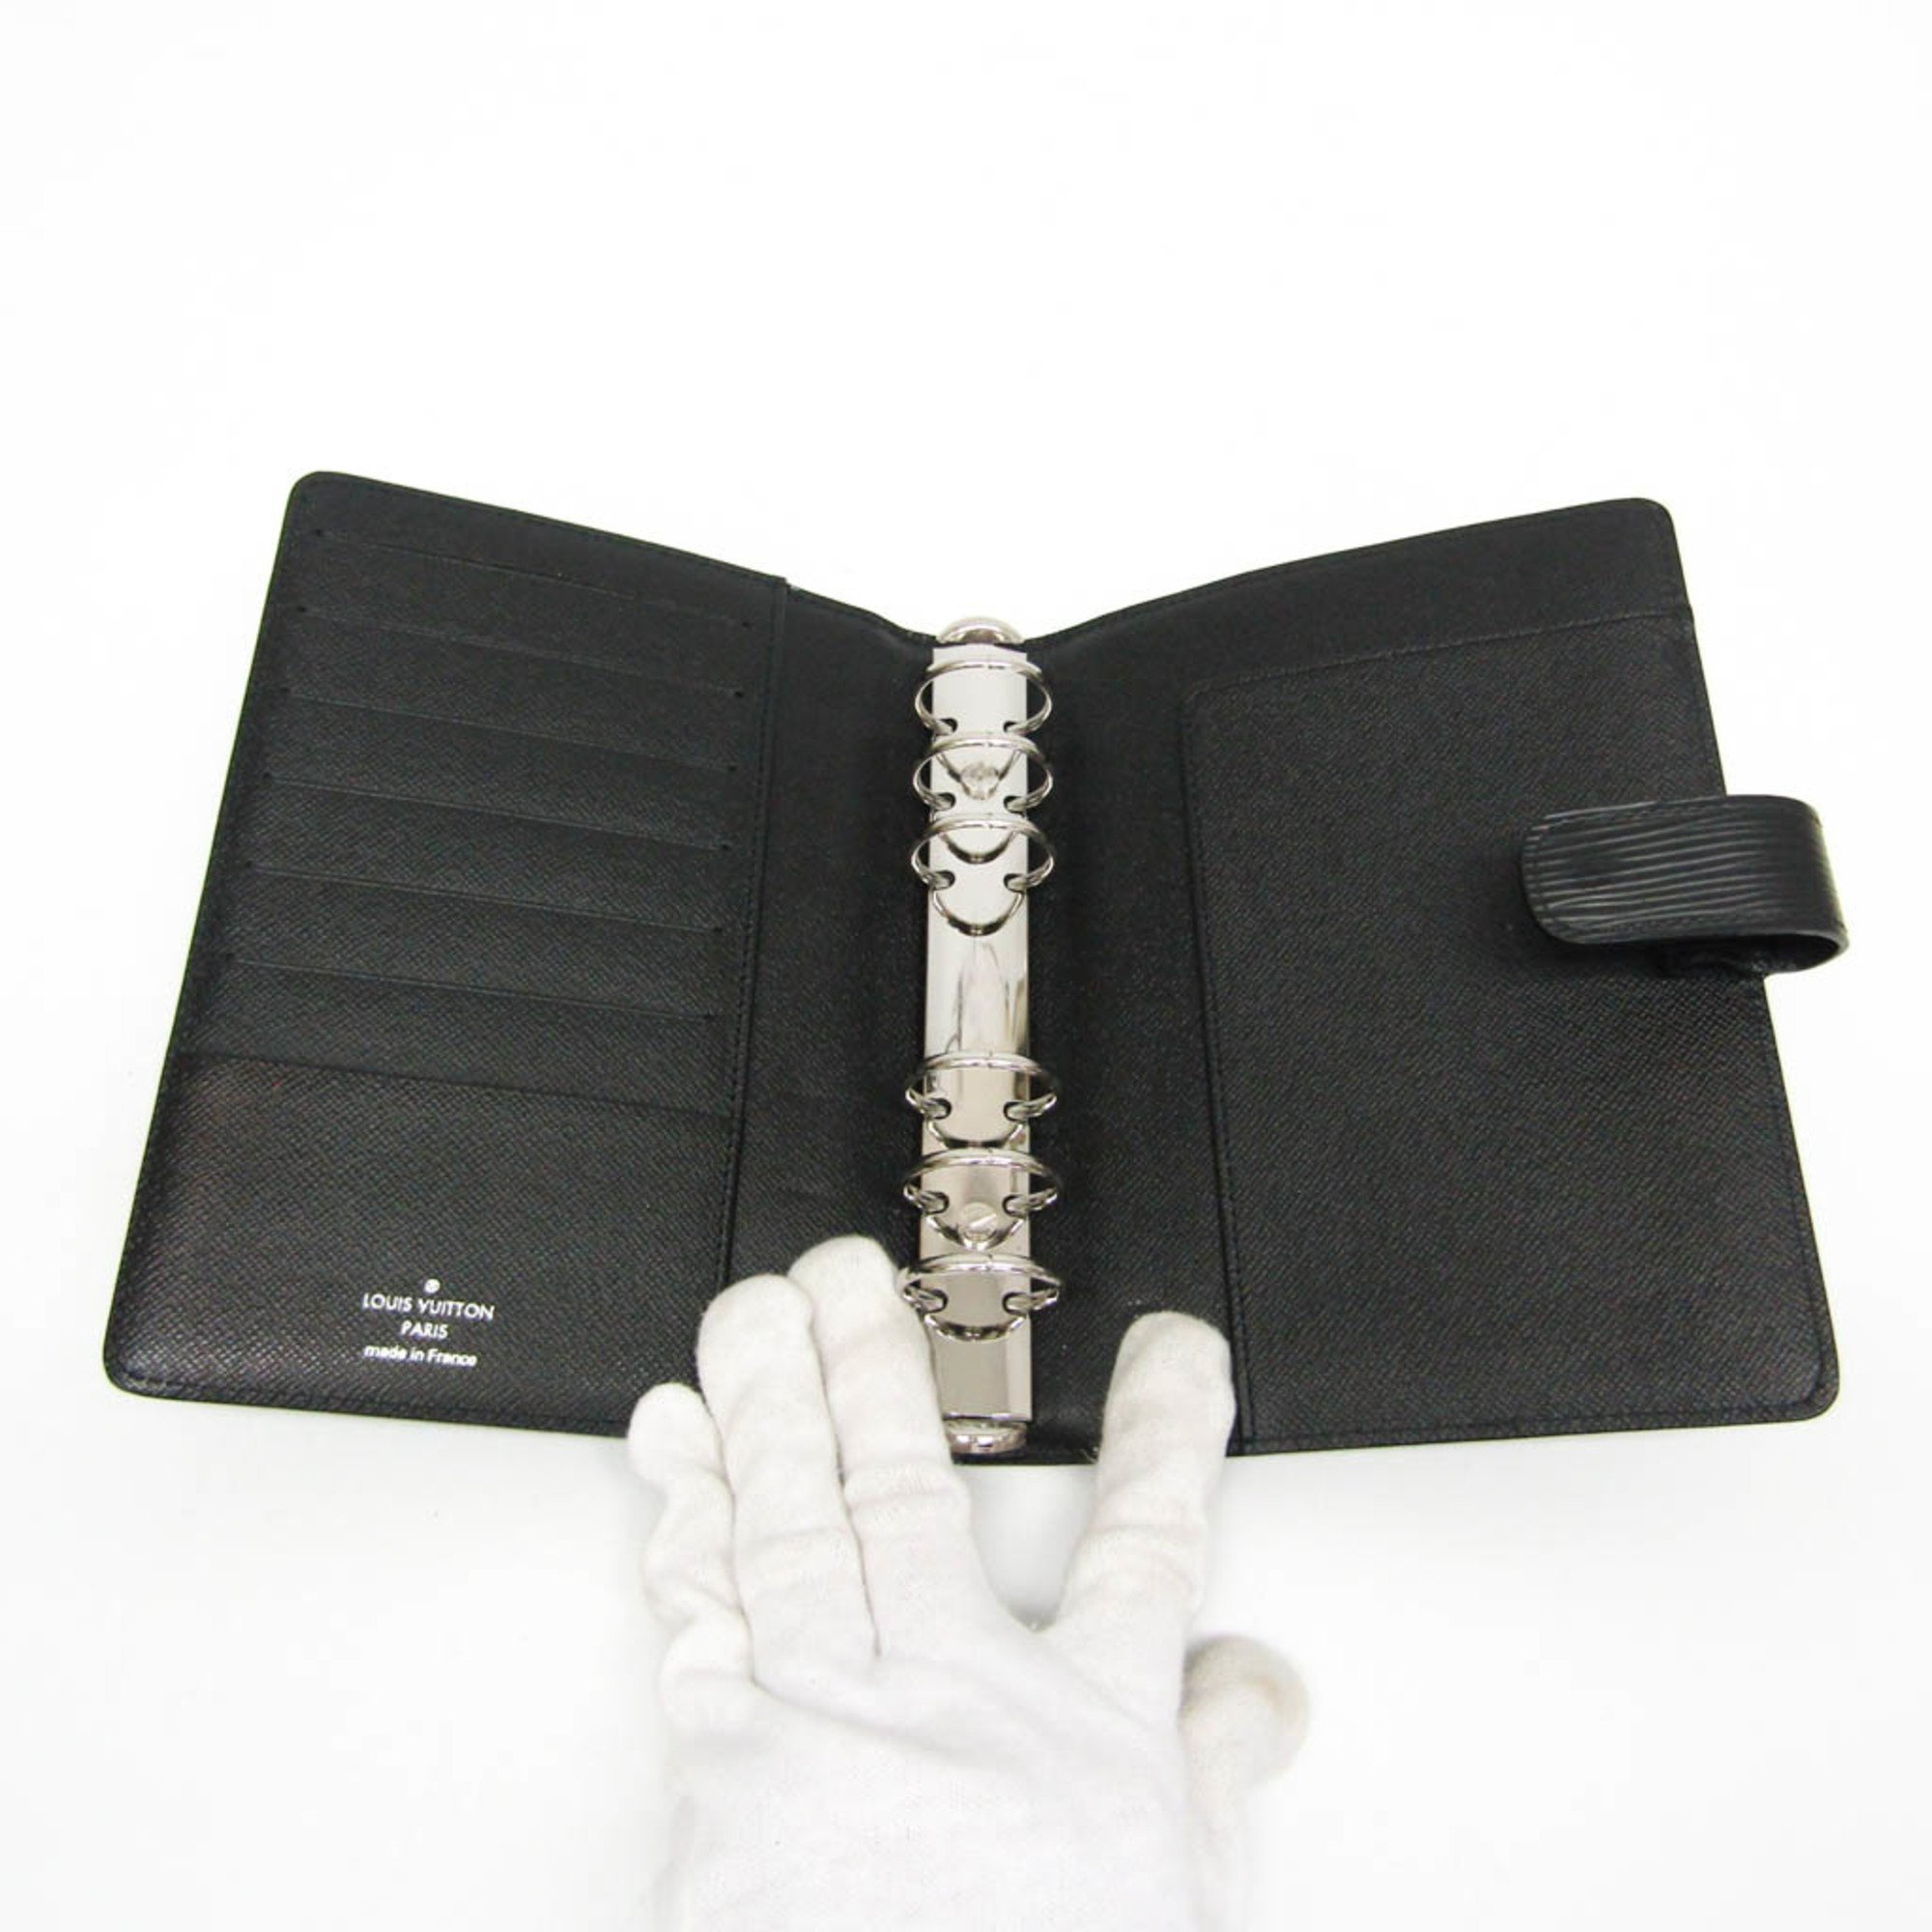 Louis Vuitton Epi Personal Size Planner Cover Noir Agenda MM R20042